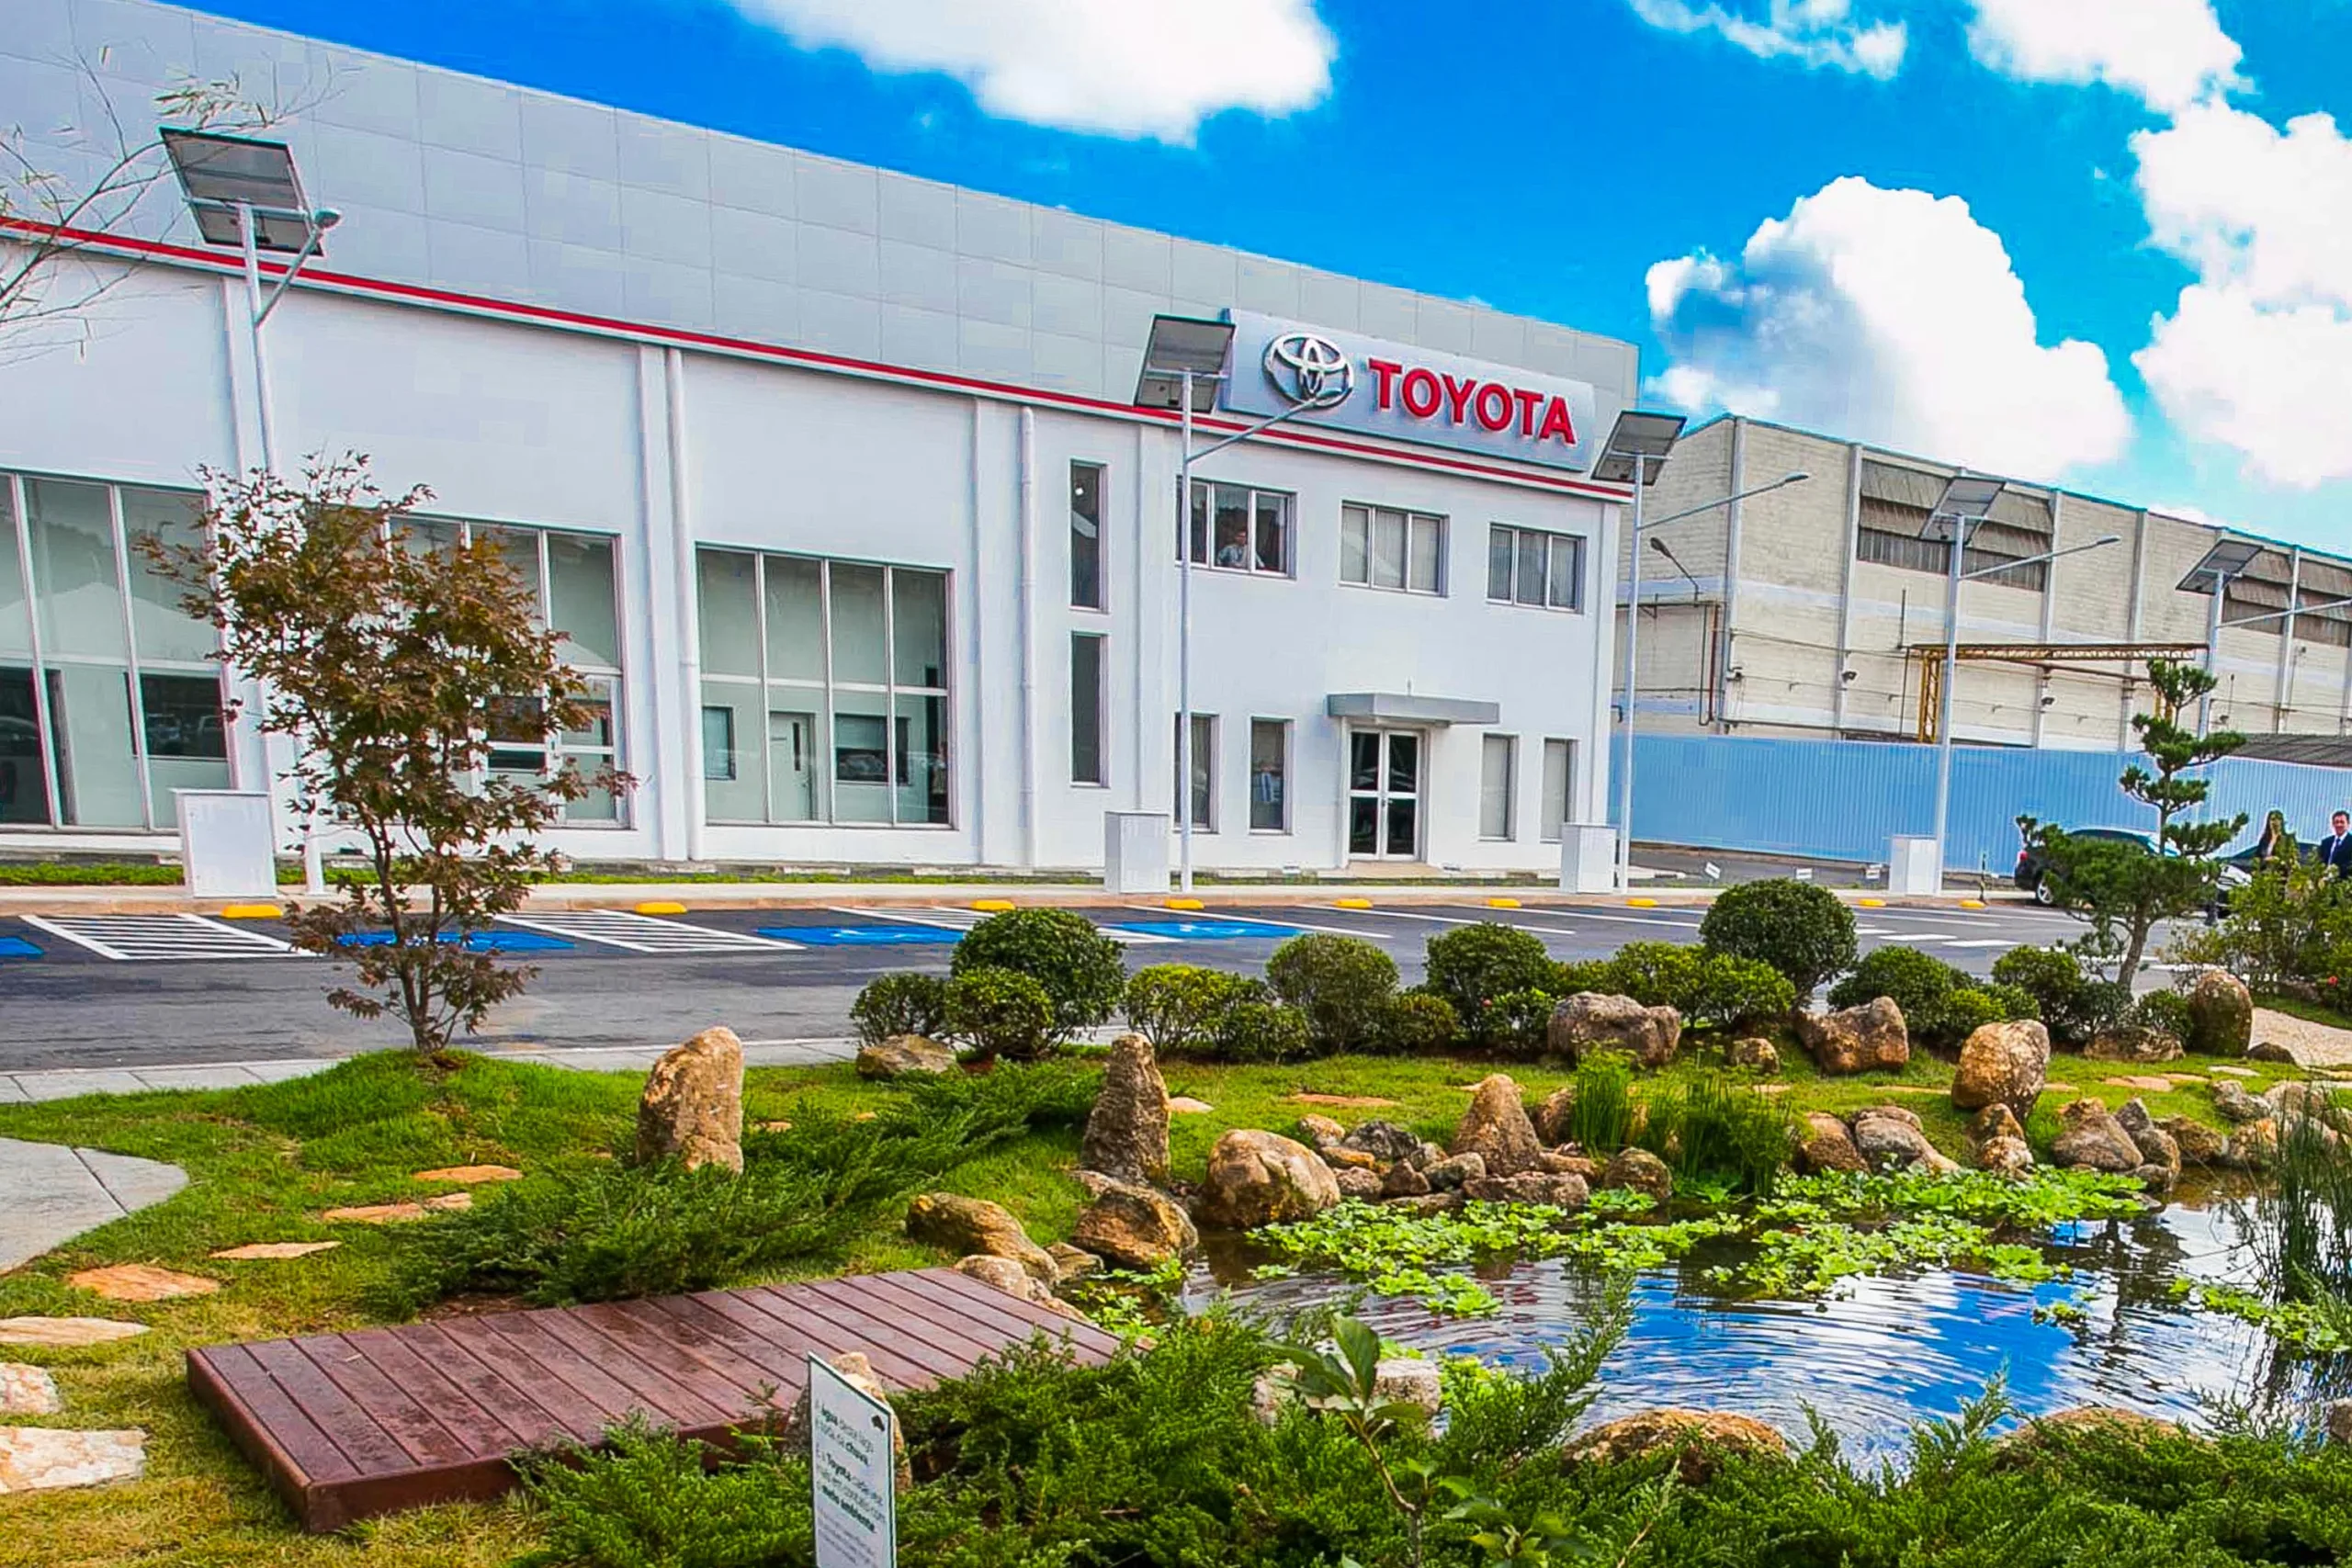 Participação estrangeira no grupo Toyota cresce e cria pressão adicional